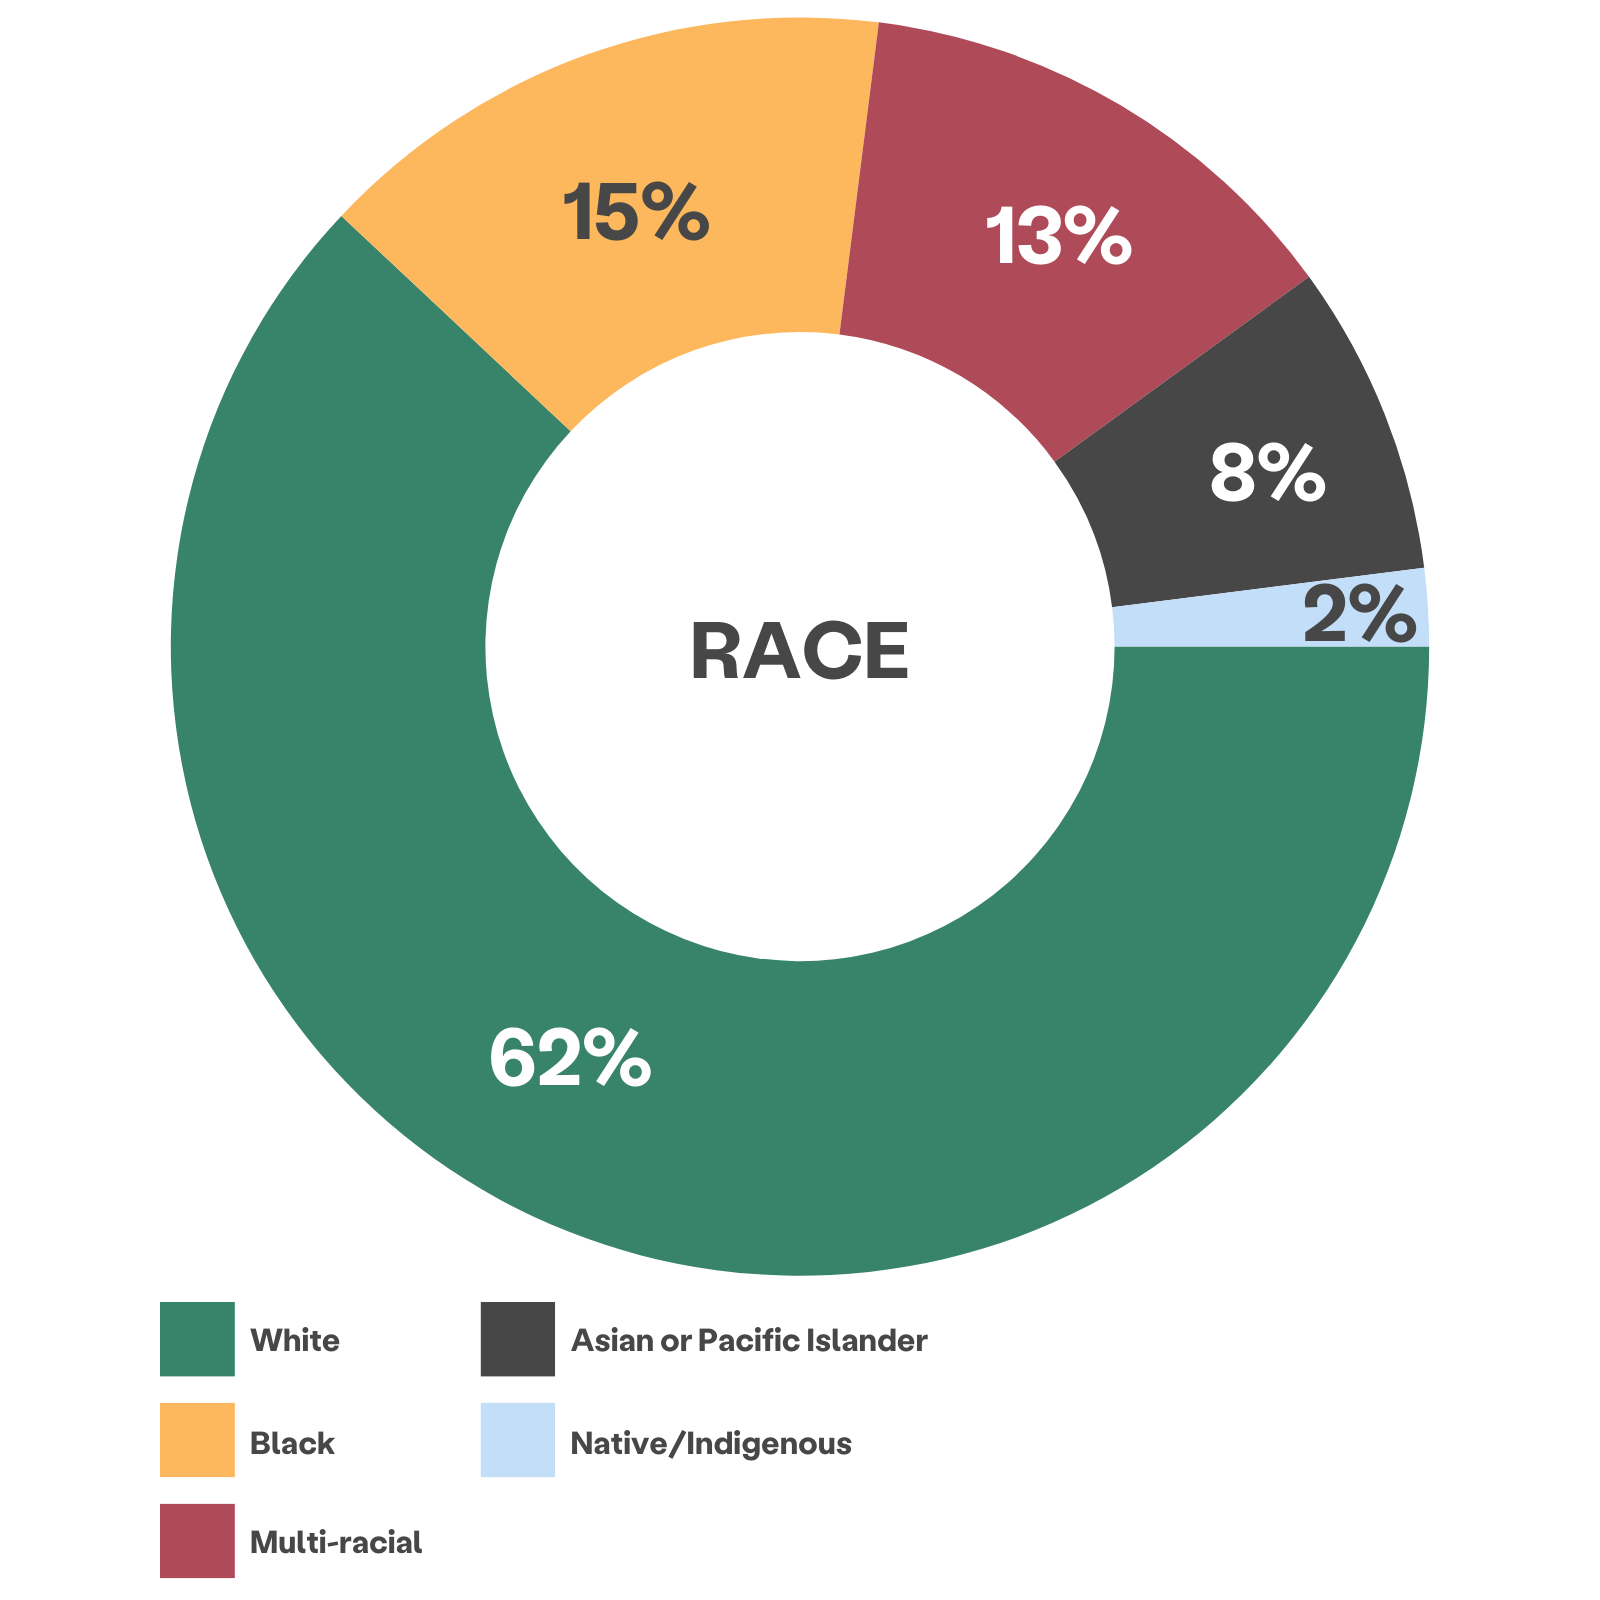 biểu đồ bánh xe nhiều màu hiển thị chủng tộc khách hàng: 62% da trắng, 15% da đen, 13% đa chủng tộc, 8% Người Châu Á hoặc Đảo Thái Bình Dương, 2% Bản địa/Bản địa